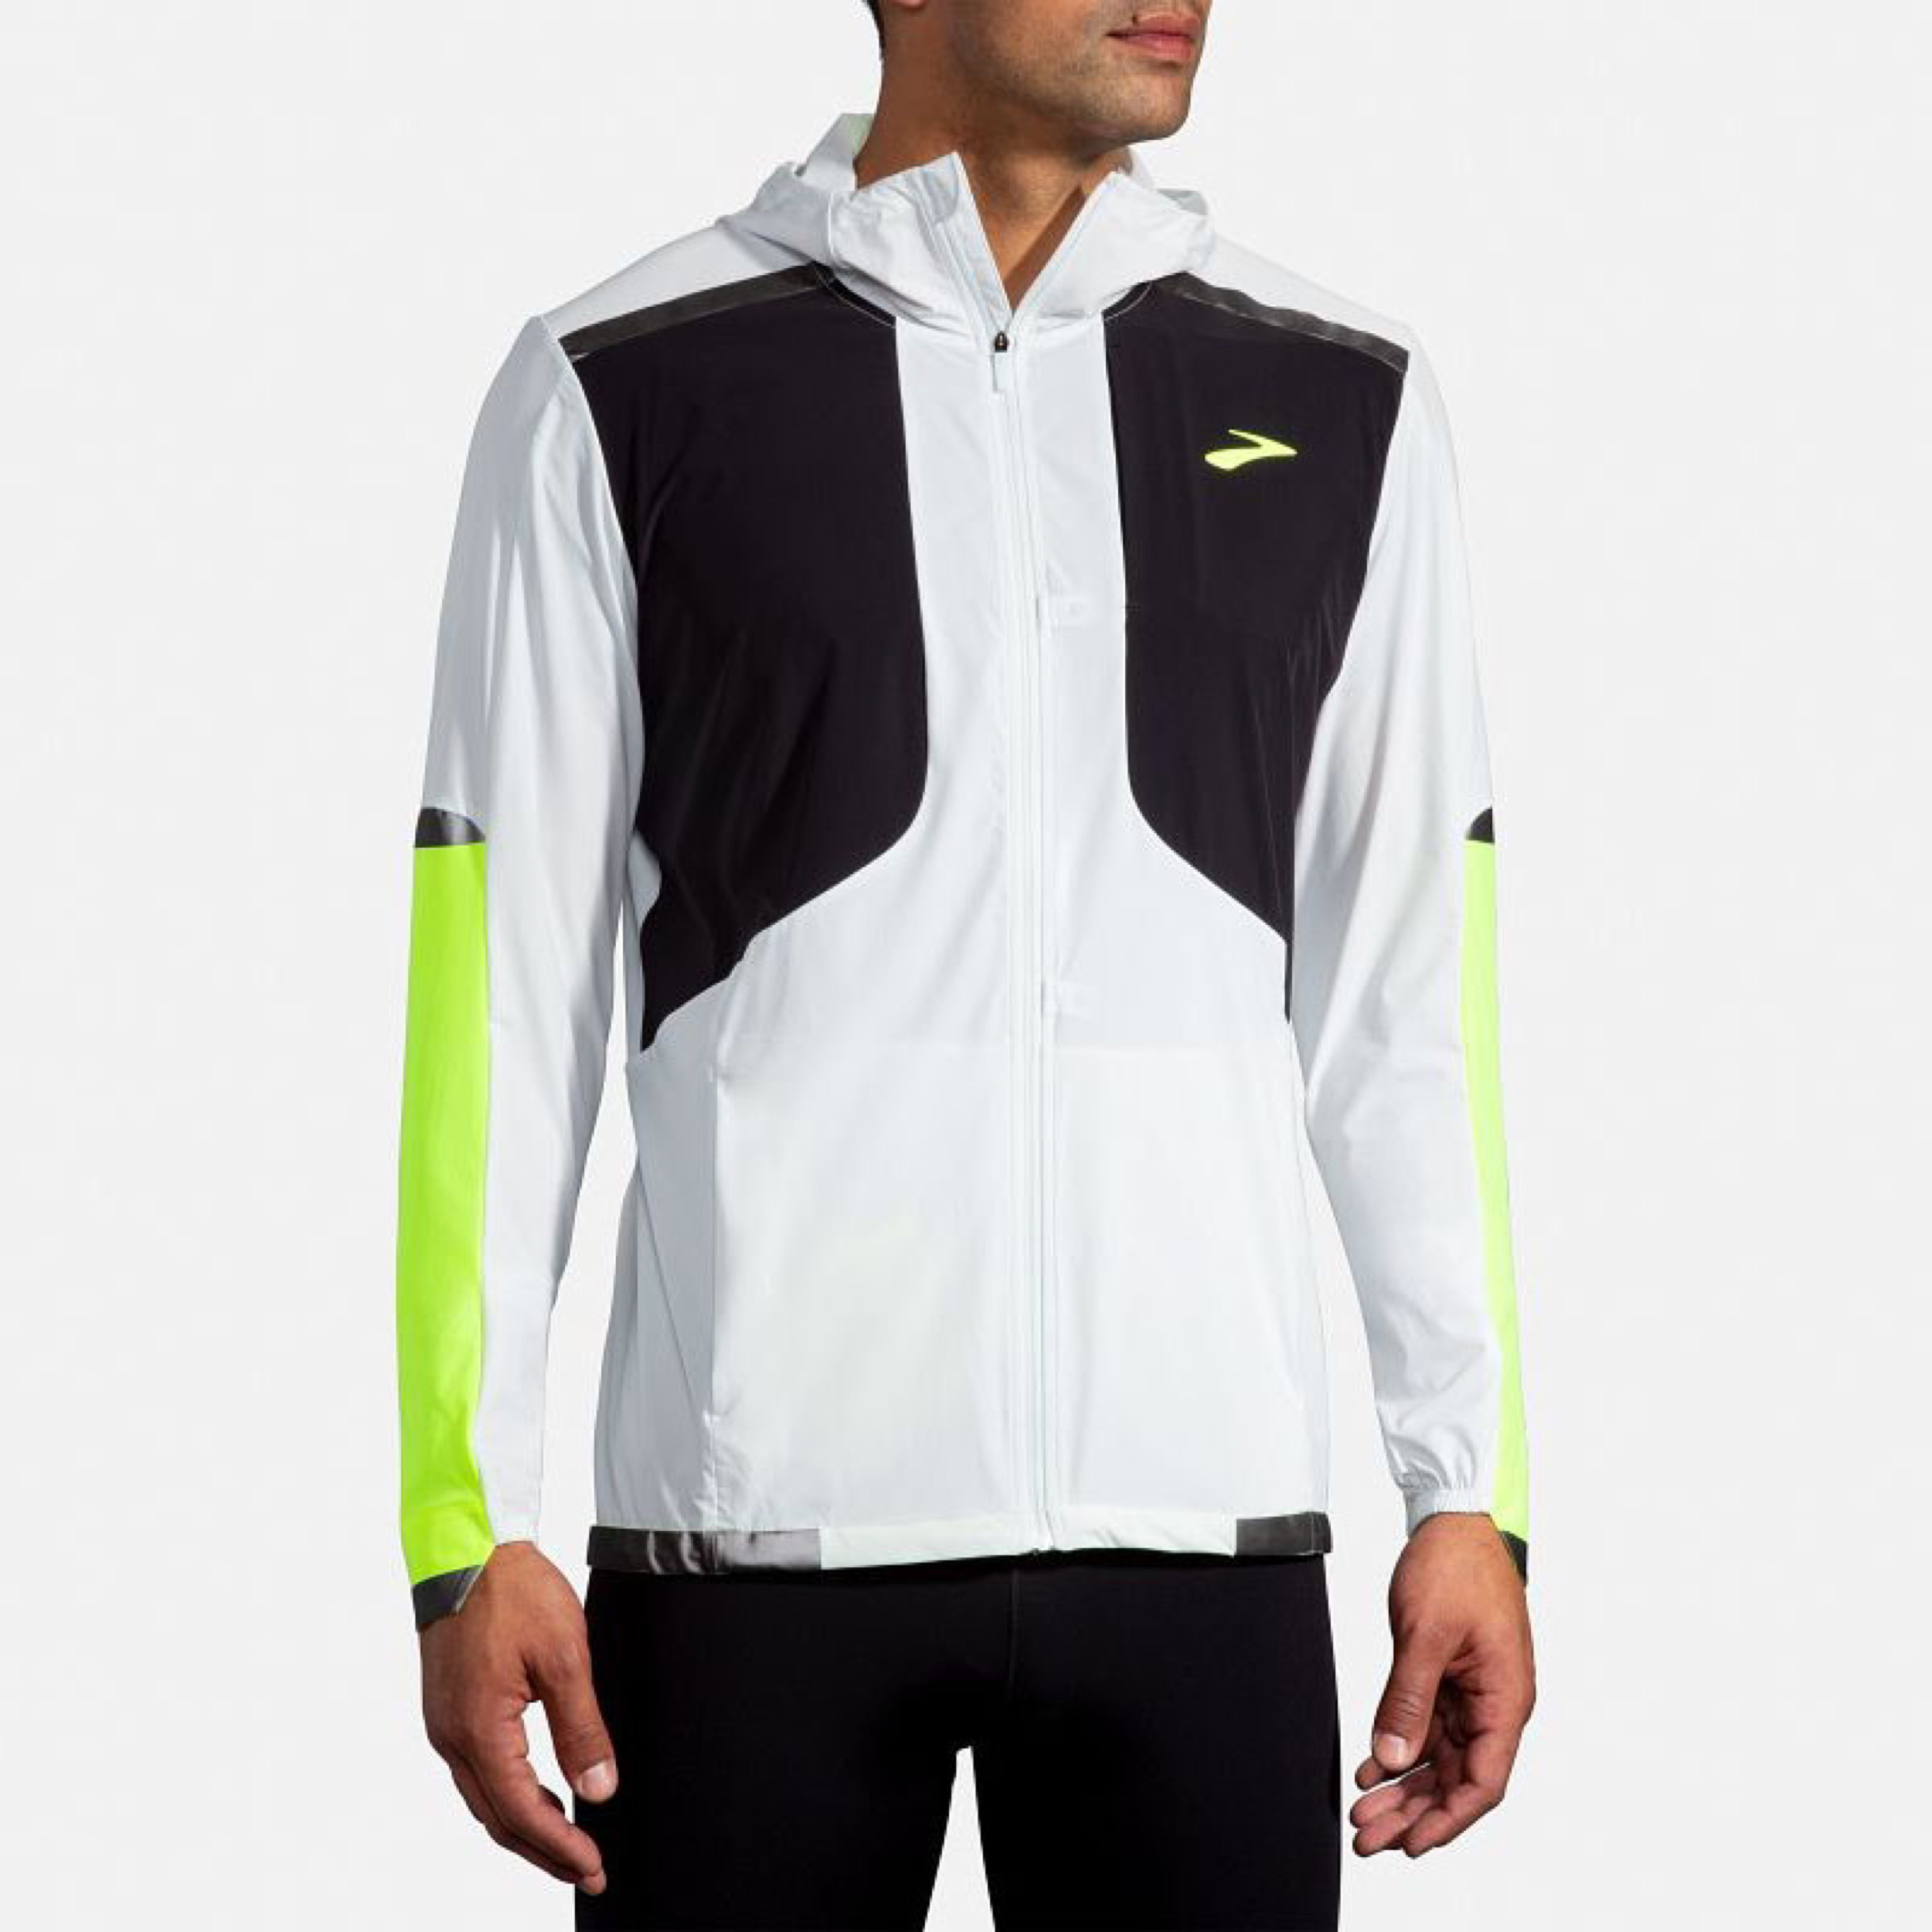 نکته خرید - قیمت روز سویشرت ورزشی مردانه بروکس مدل Carbonite Jacket خرید